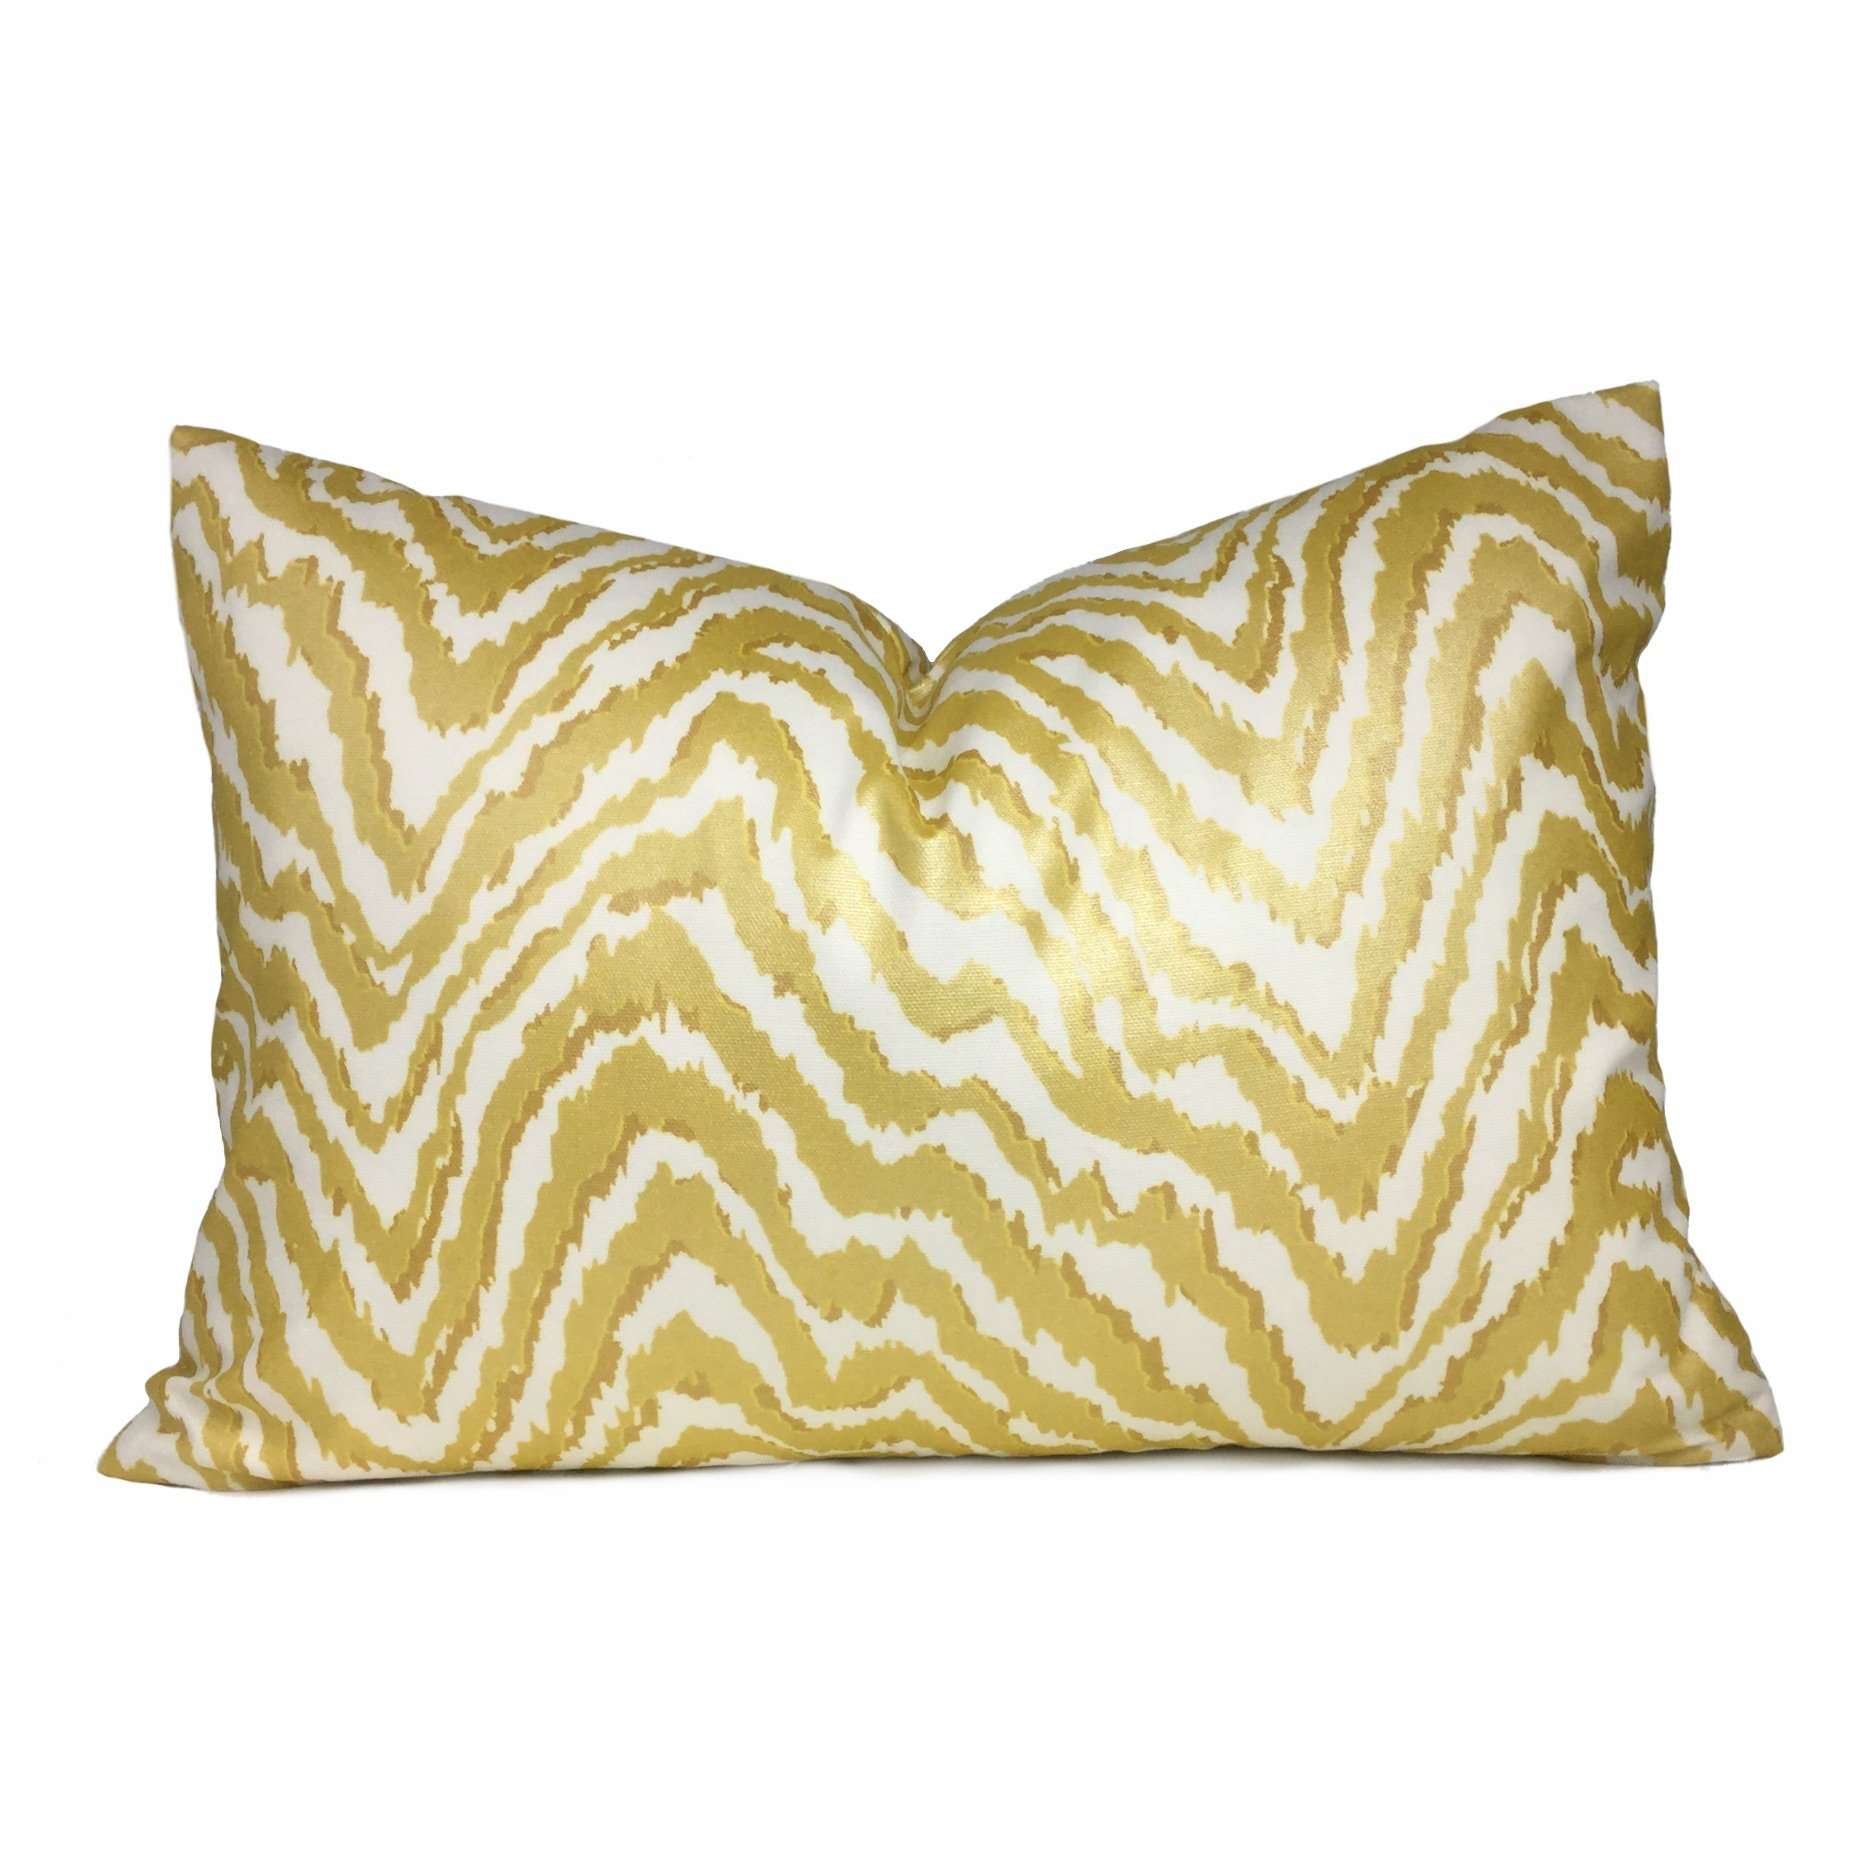 Metallic Gold Cream Animal Stripes Cotton Print Pillow Cover